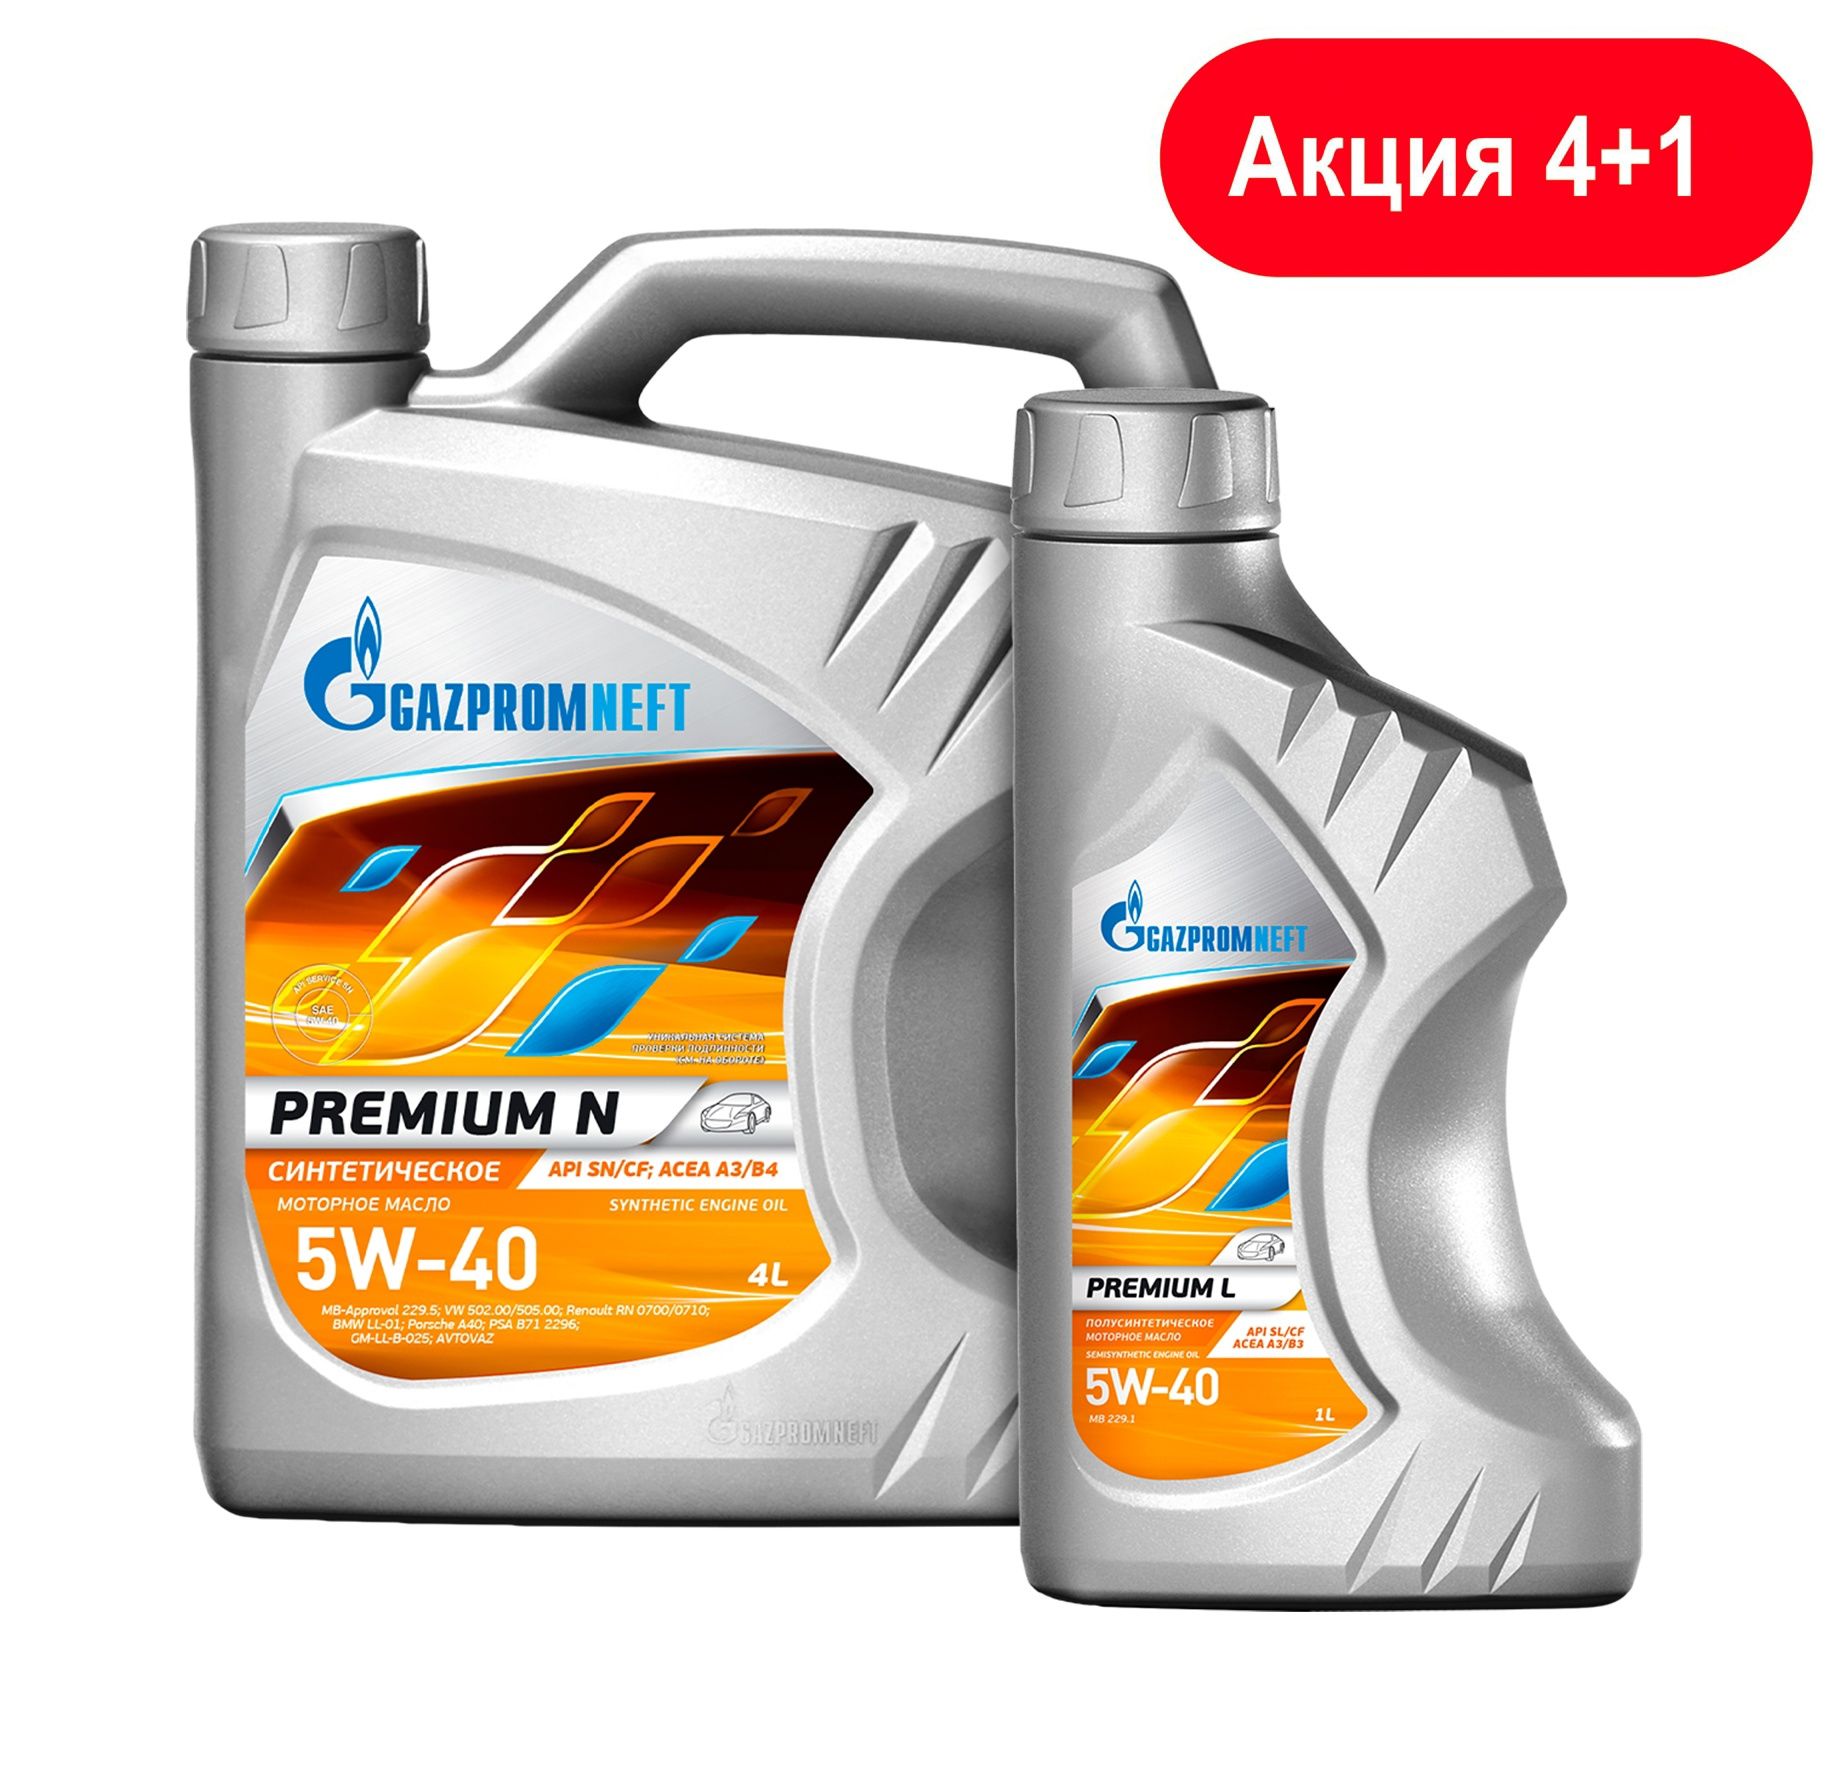 Gazpromneft Premium n 5w-40. Масло Газпромнефть 5w40 премиум. Масло Газпромнефть премиум н 5w40. Масло Газпромнефть 5w40 Premium n. Масло синтетик премиум моторное 5w40